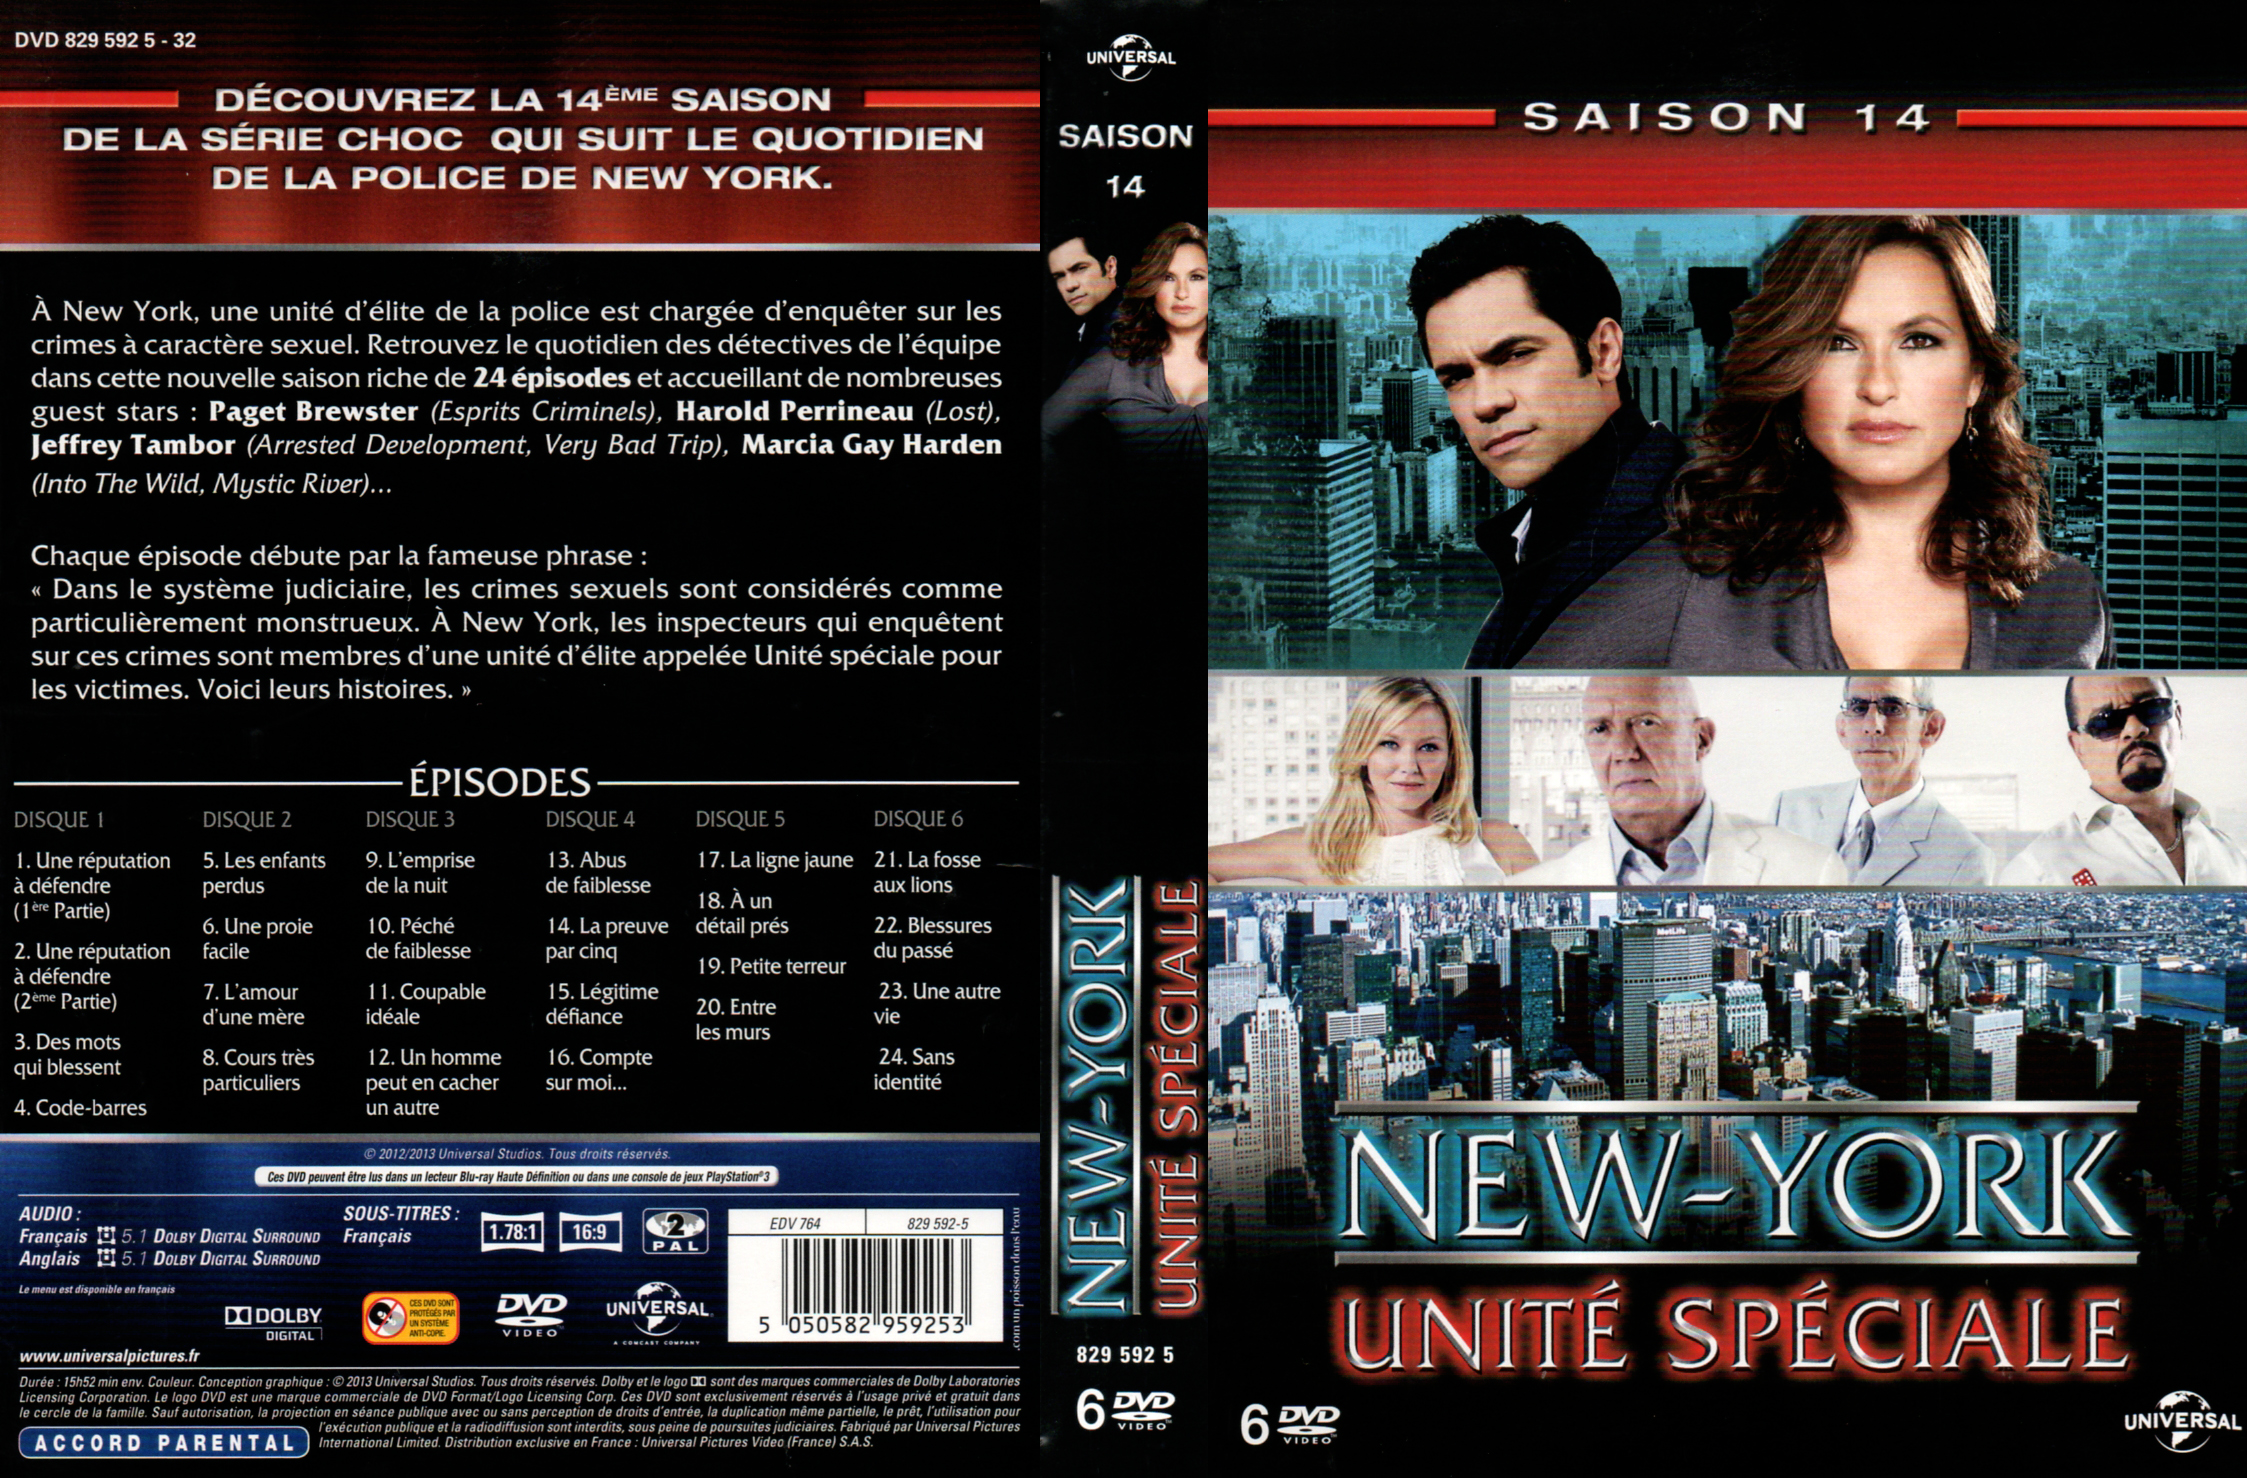 Jaquette DVD New York unit spciale saison 14 COFFRET